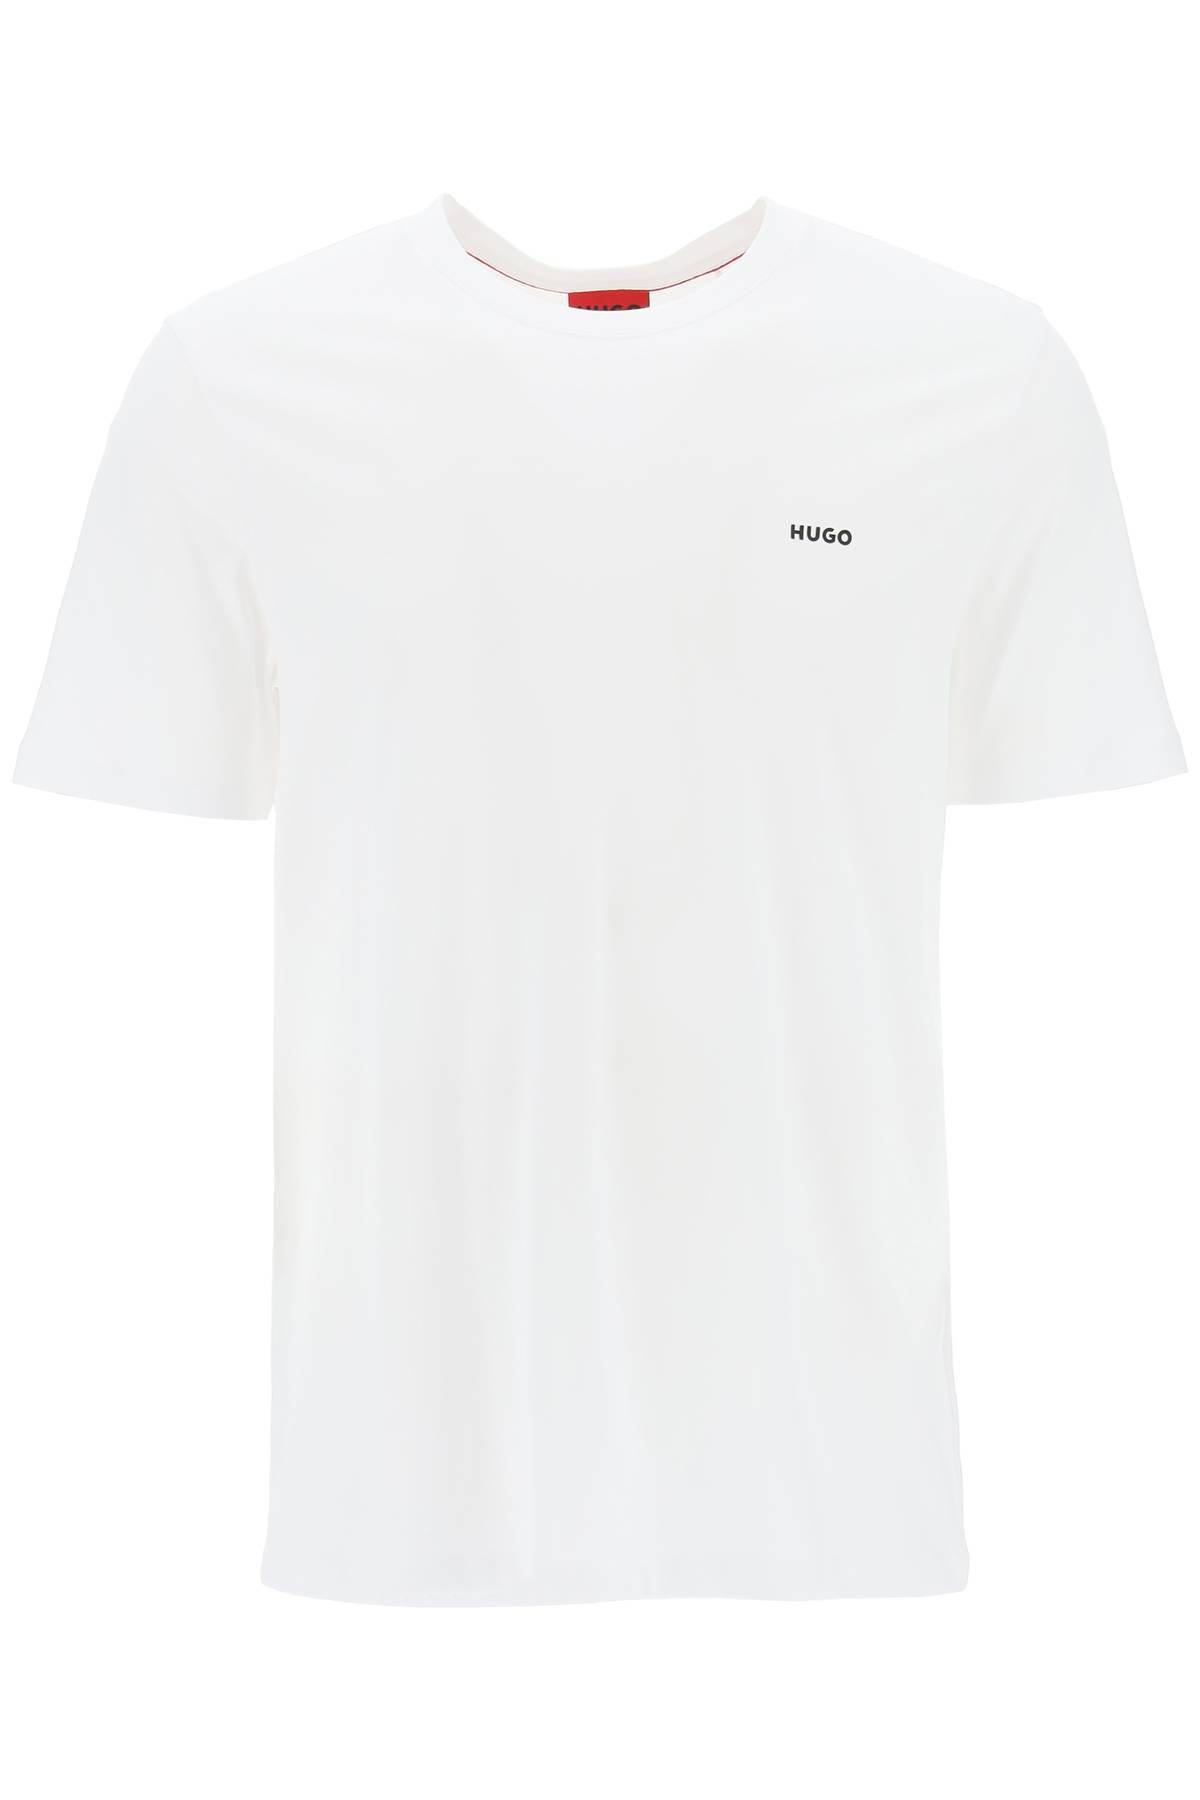 Hugo HUGO oversized dero t-shirt with logo